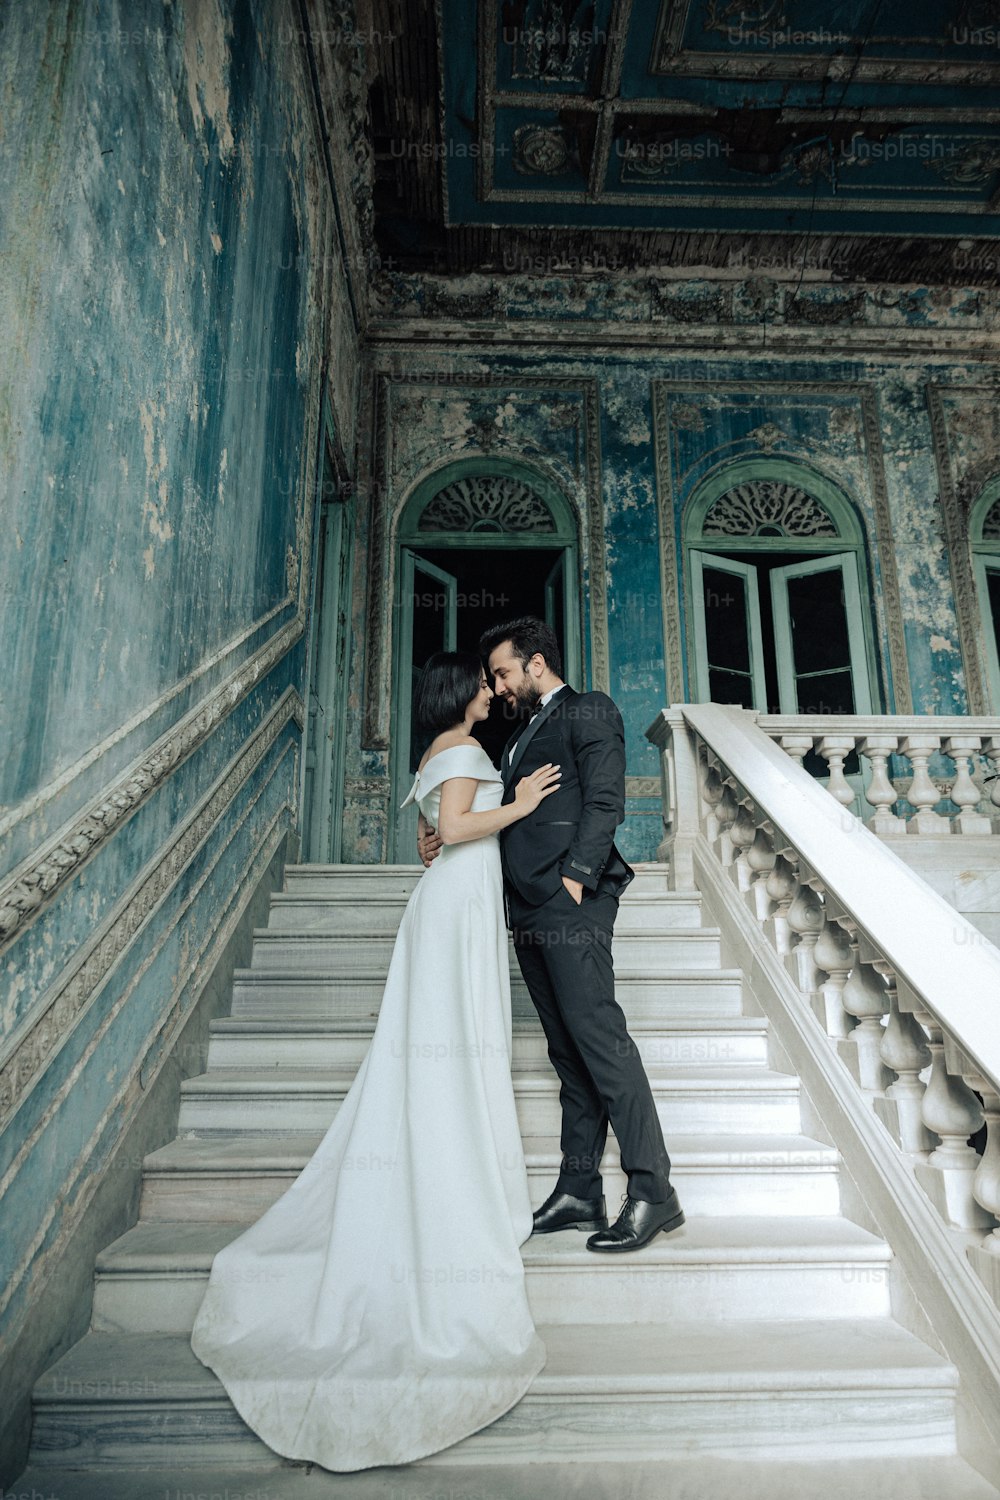 Ein Brautpaar küsst sich auf den Stufen eines Gebäudes